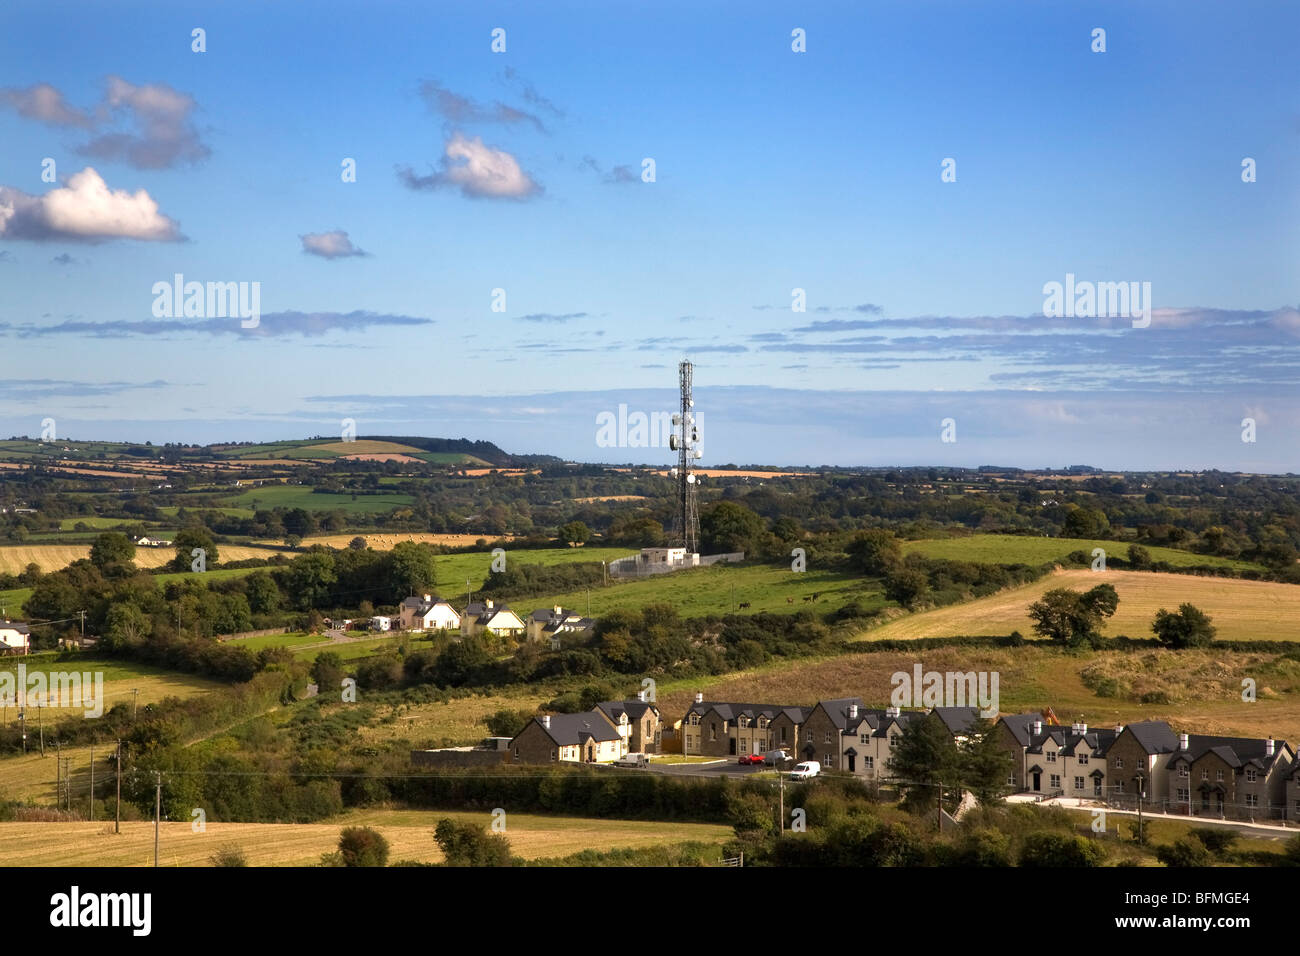 Mât de communication près de vinegar hill, Monkton, Co Wexford, Irlande Banque D'Images